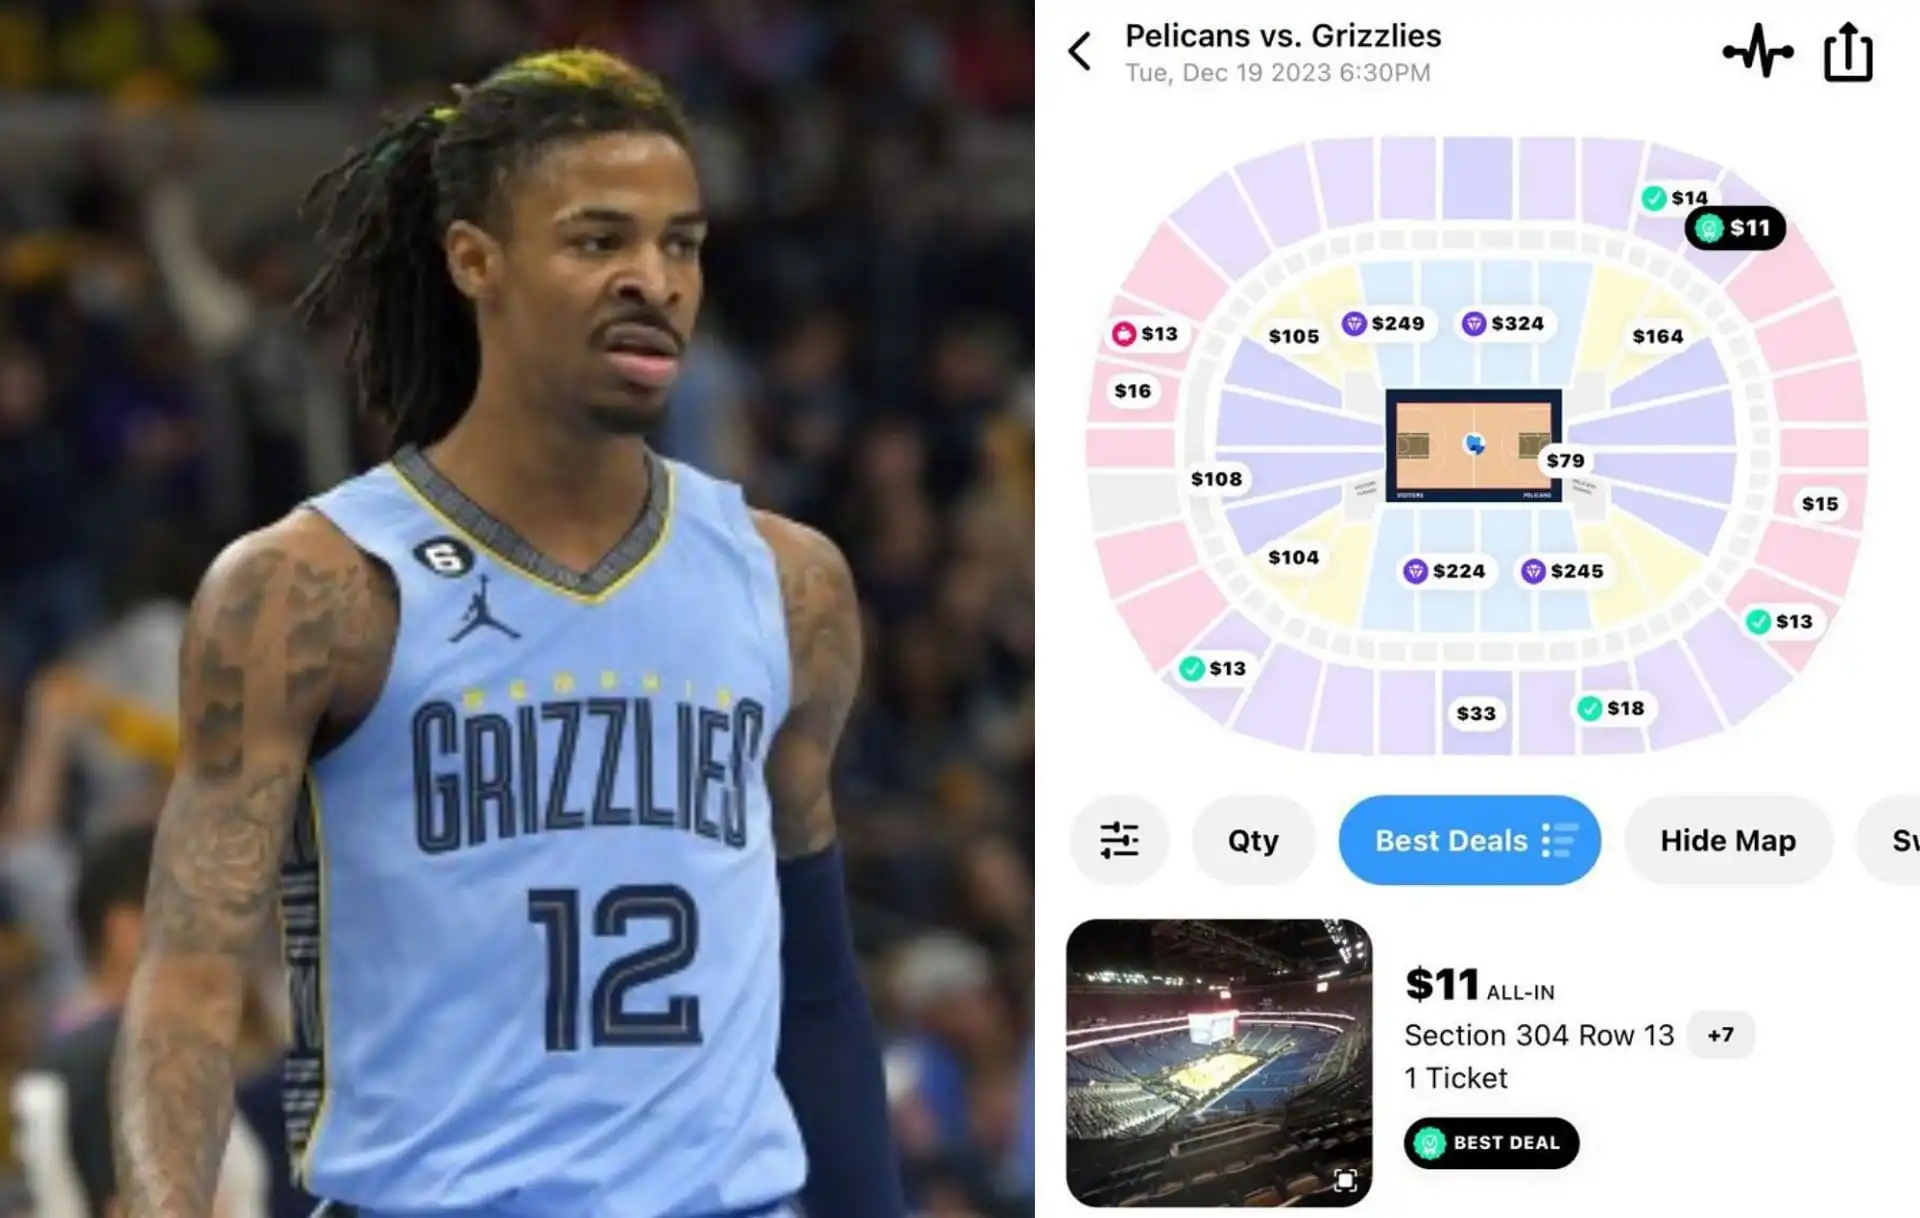 Las entradas para el partido de regreso de la NBA de Ja Morant que han tocado fondo a 11 dólares tienen a los aficionados haciendo payasadas a la estrella de los Grizzlies